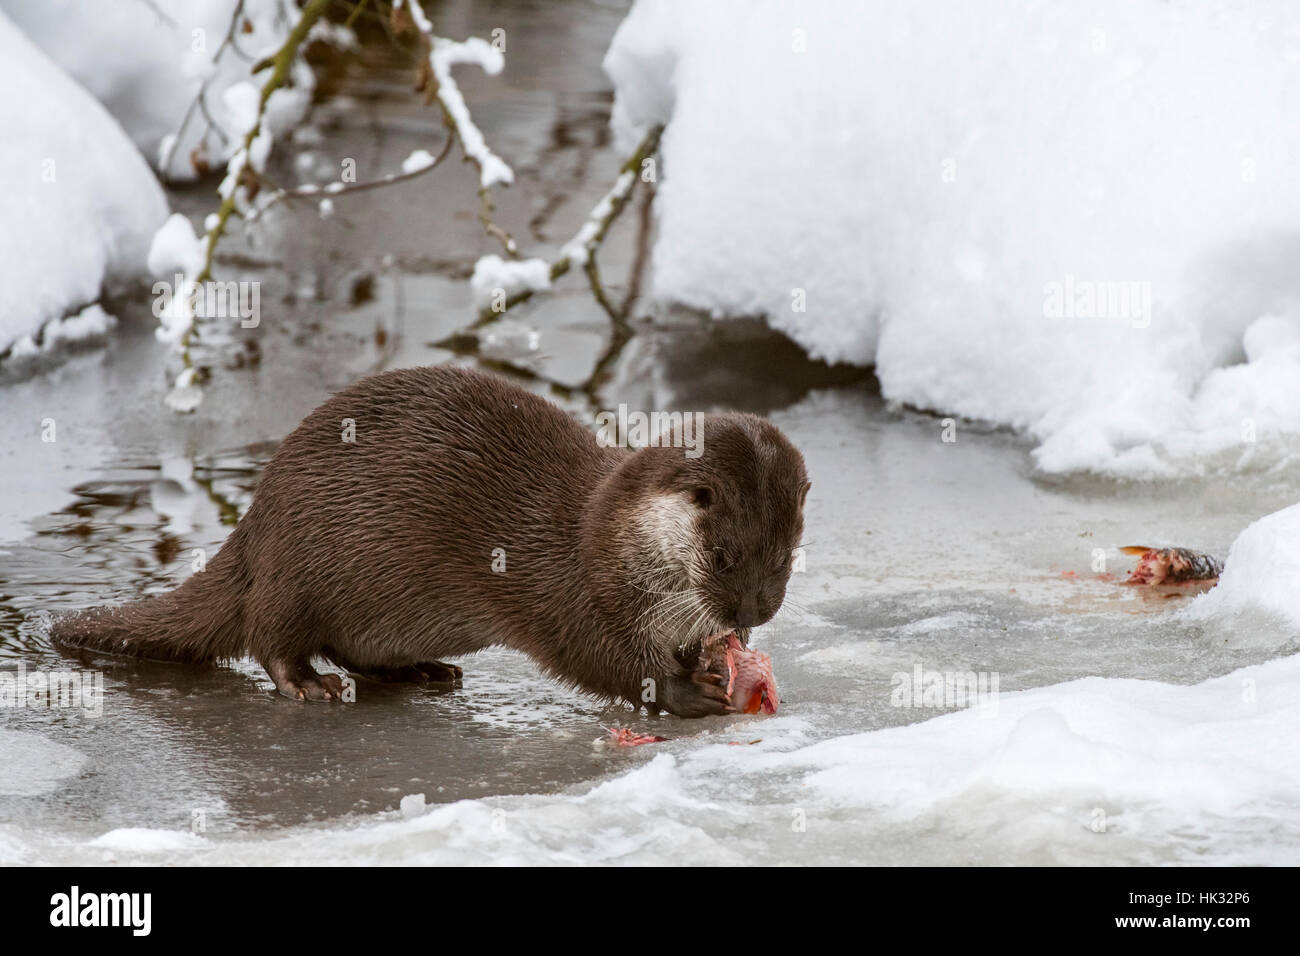 Rivière européenne loutre (Lutra lutra) manger du poisson pêché sur berge, dans la neige en hiver Banque D'Images